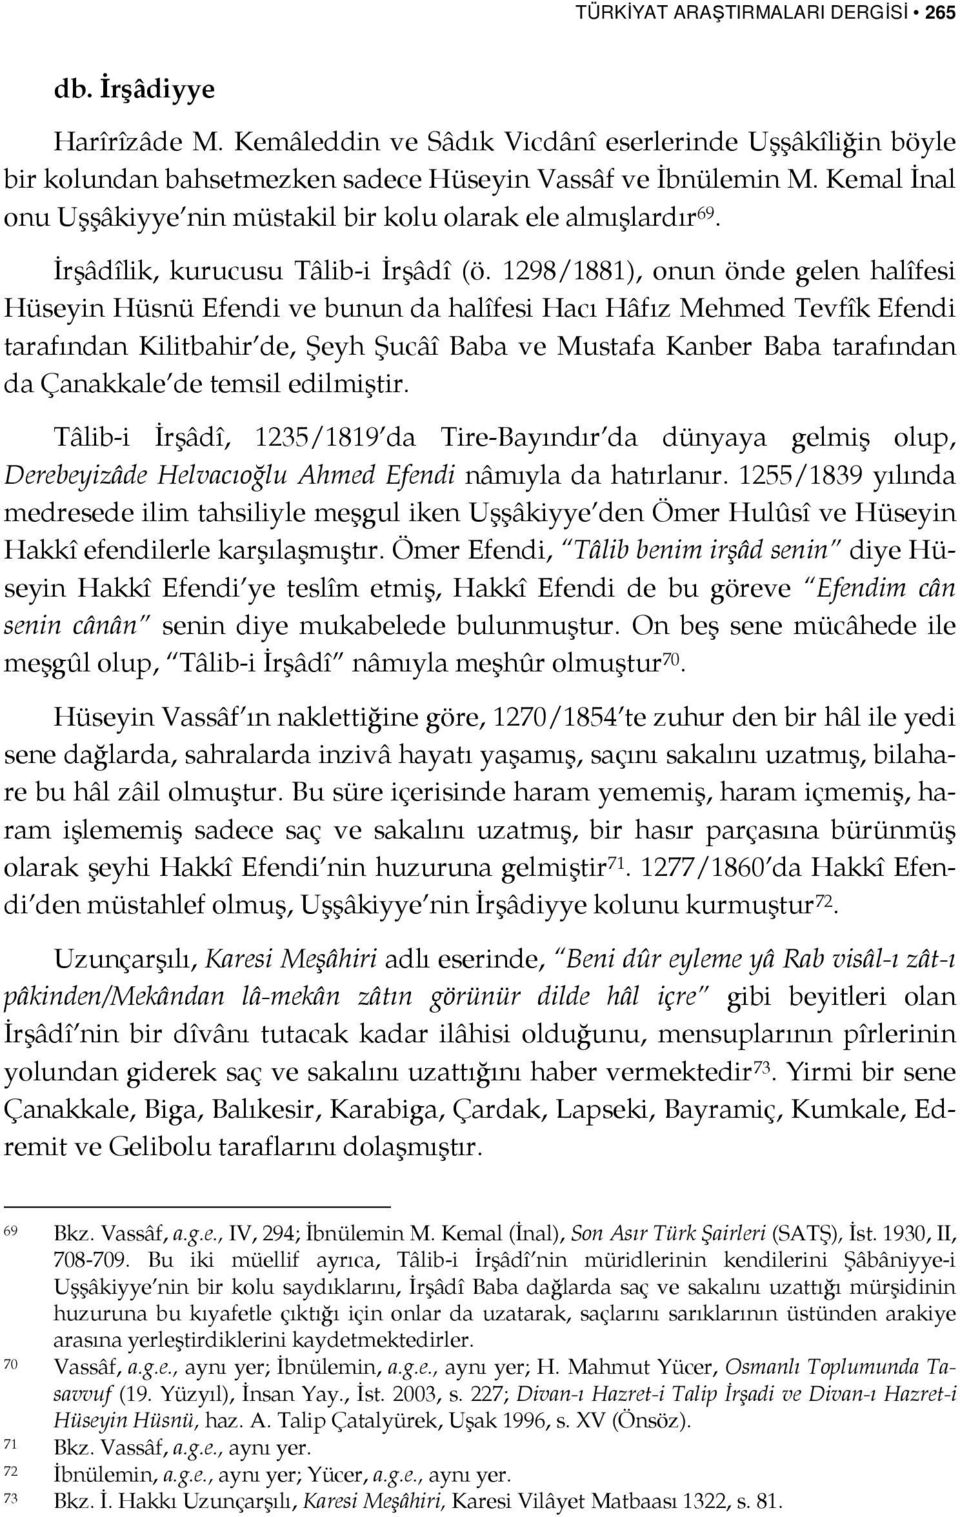 1298/1881), onun önde gelen halîfesi Hüseyin Hüsnü Efendi ve bunun da halîfesi Hacı Hâfız Mehmed Tevfîk Efendi tarafından Kilitbahir de, Şeyh Şucâî Baba ve Mustafa Kanber Baba tarafından da Çanakkale